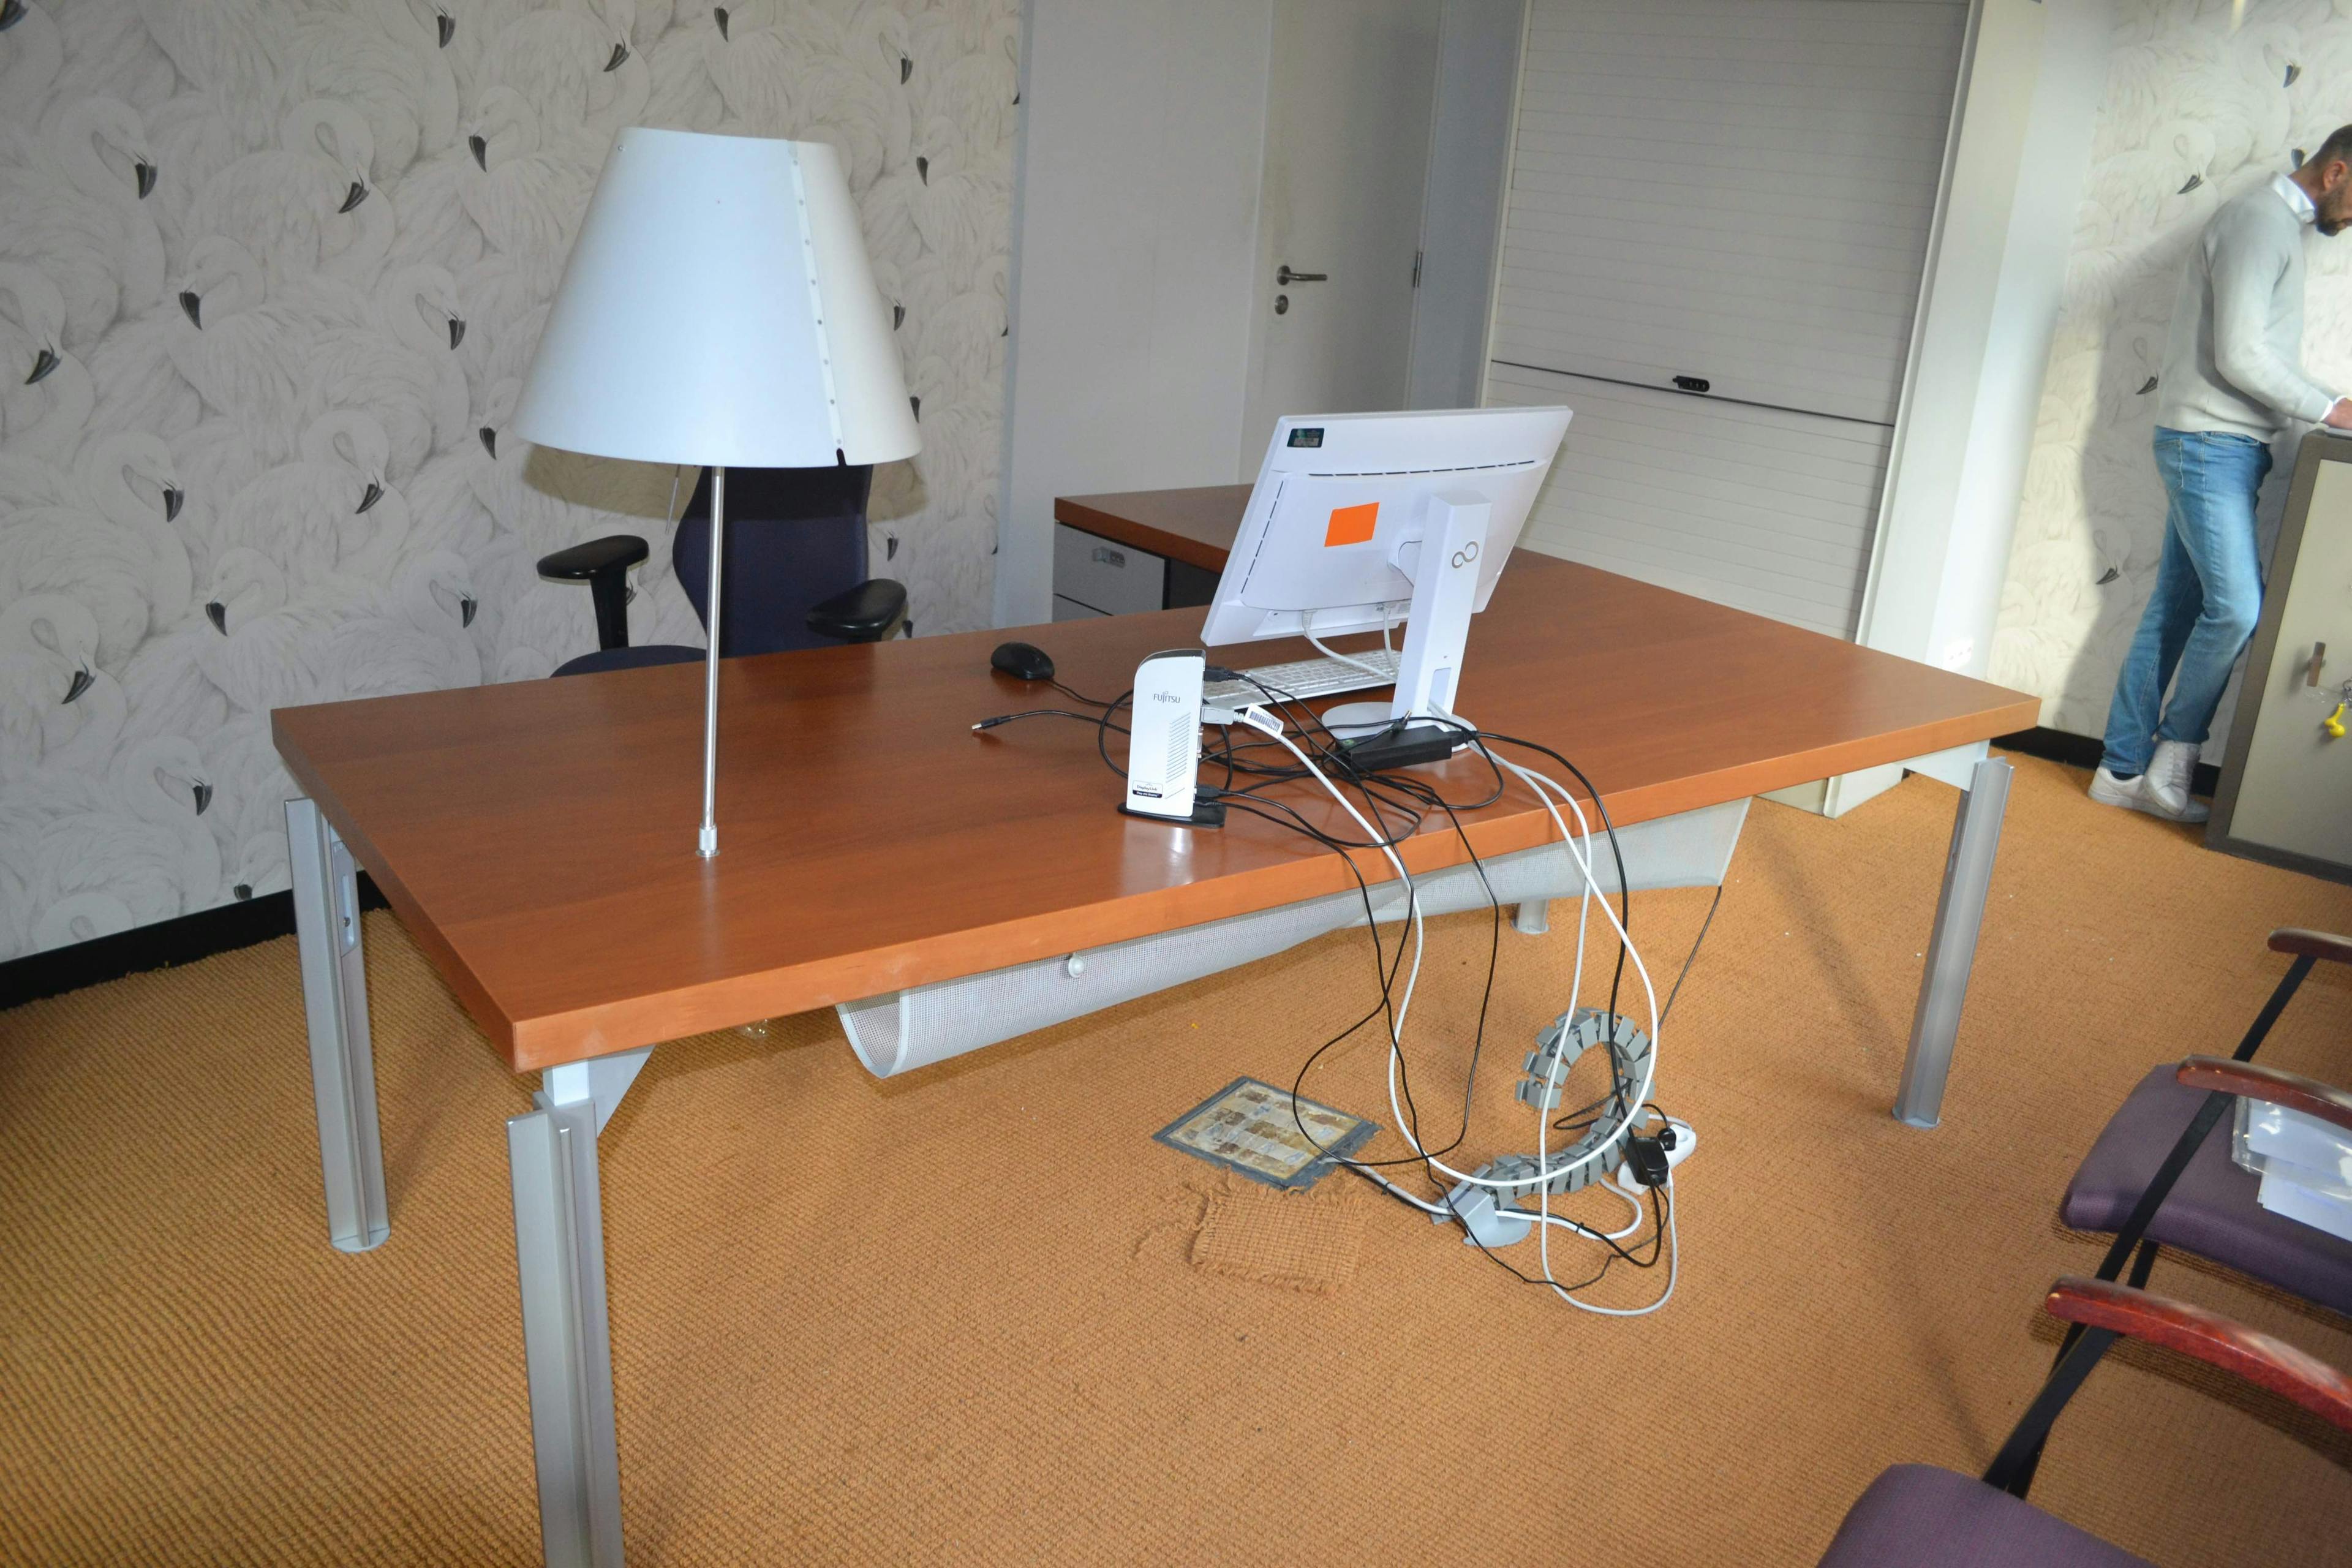 Bureau en L avec lampe / Bureau L Vorm met lamp - Tweedehands kwaliteit "Bureaus" - Relieve Furniture - 1